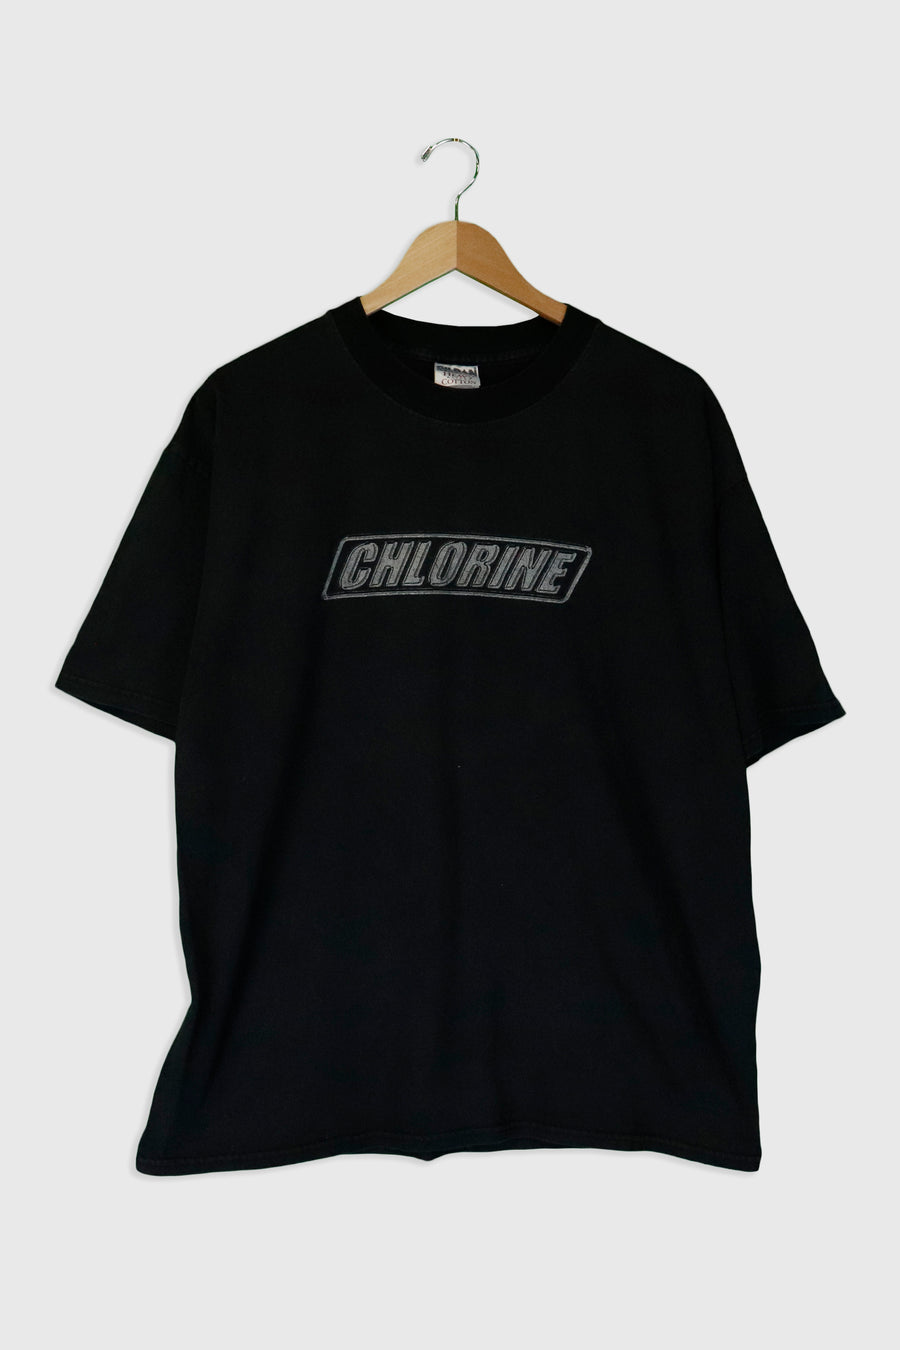 Vintage Chlorine T Shirt Sz XL